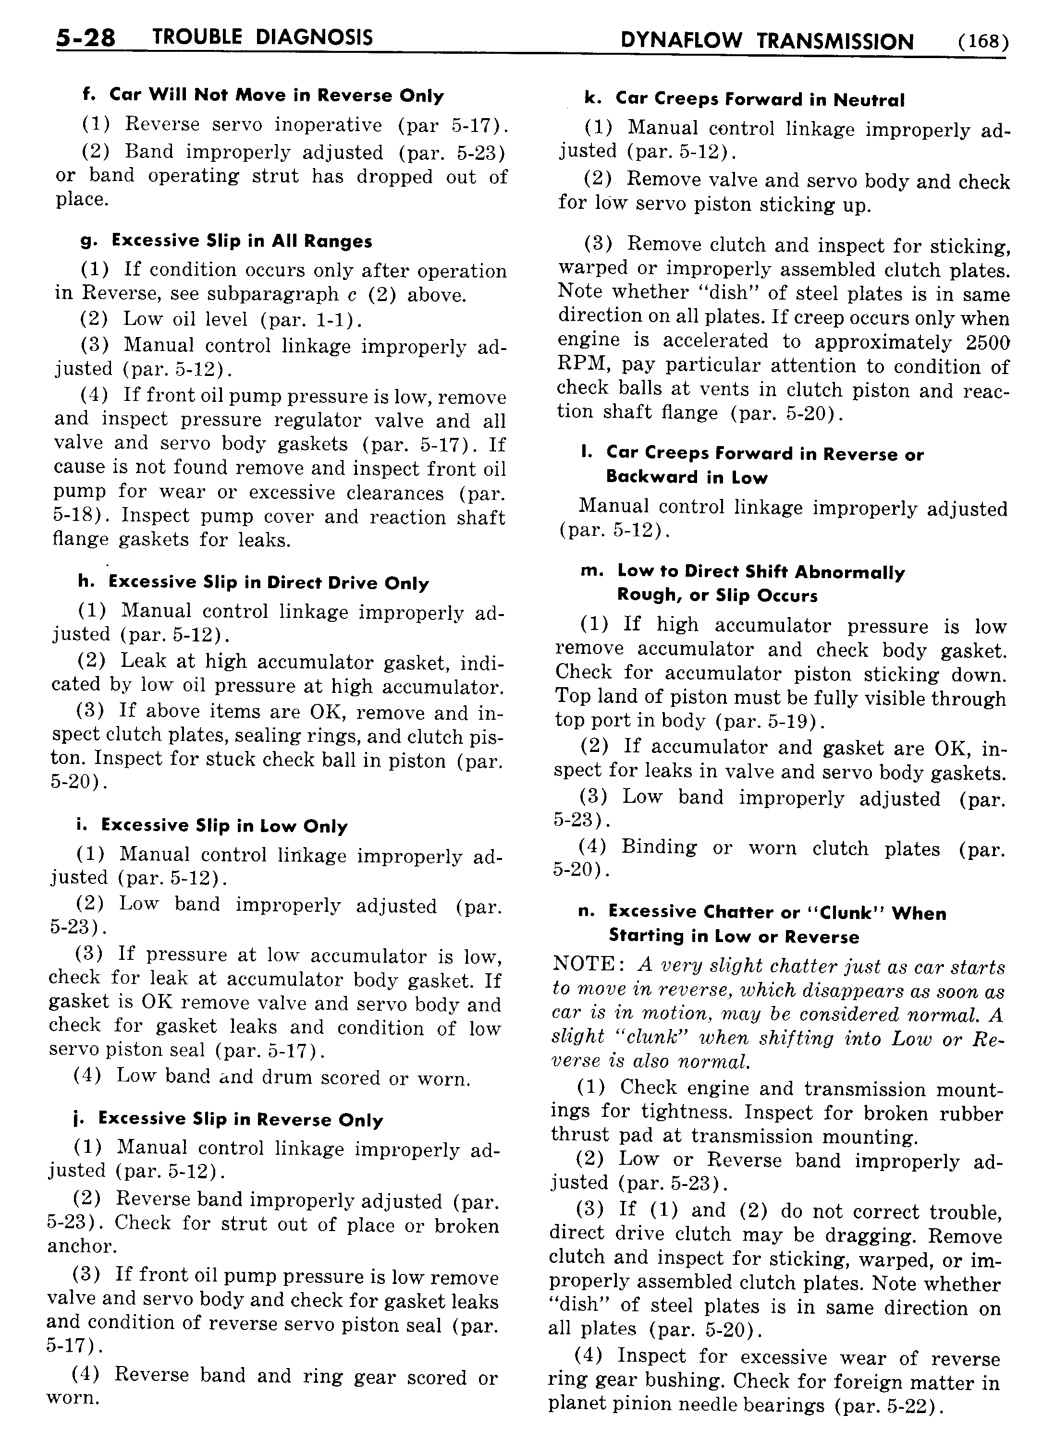 n_06 1955 Buick Shop Manual - Dynaflow-028-028.jpg